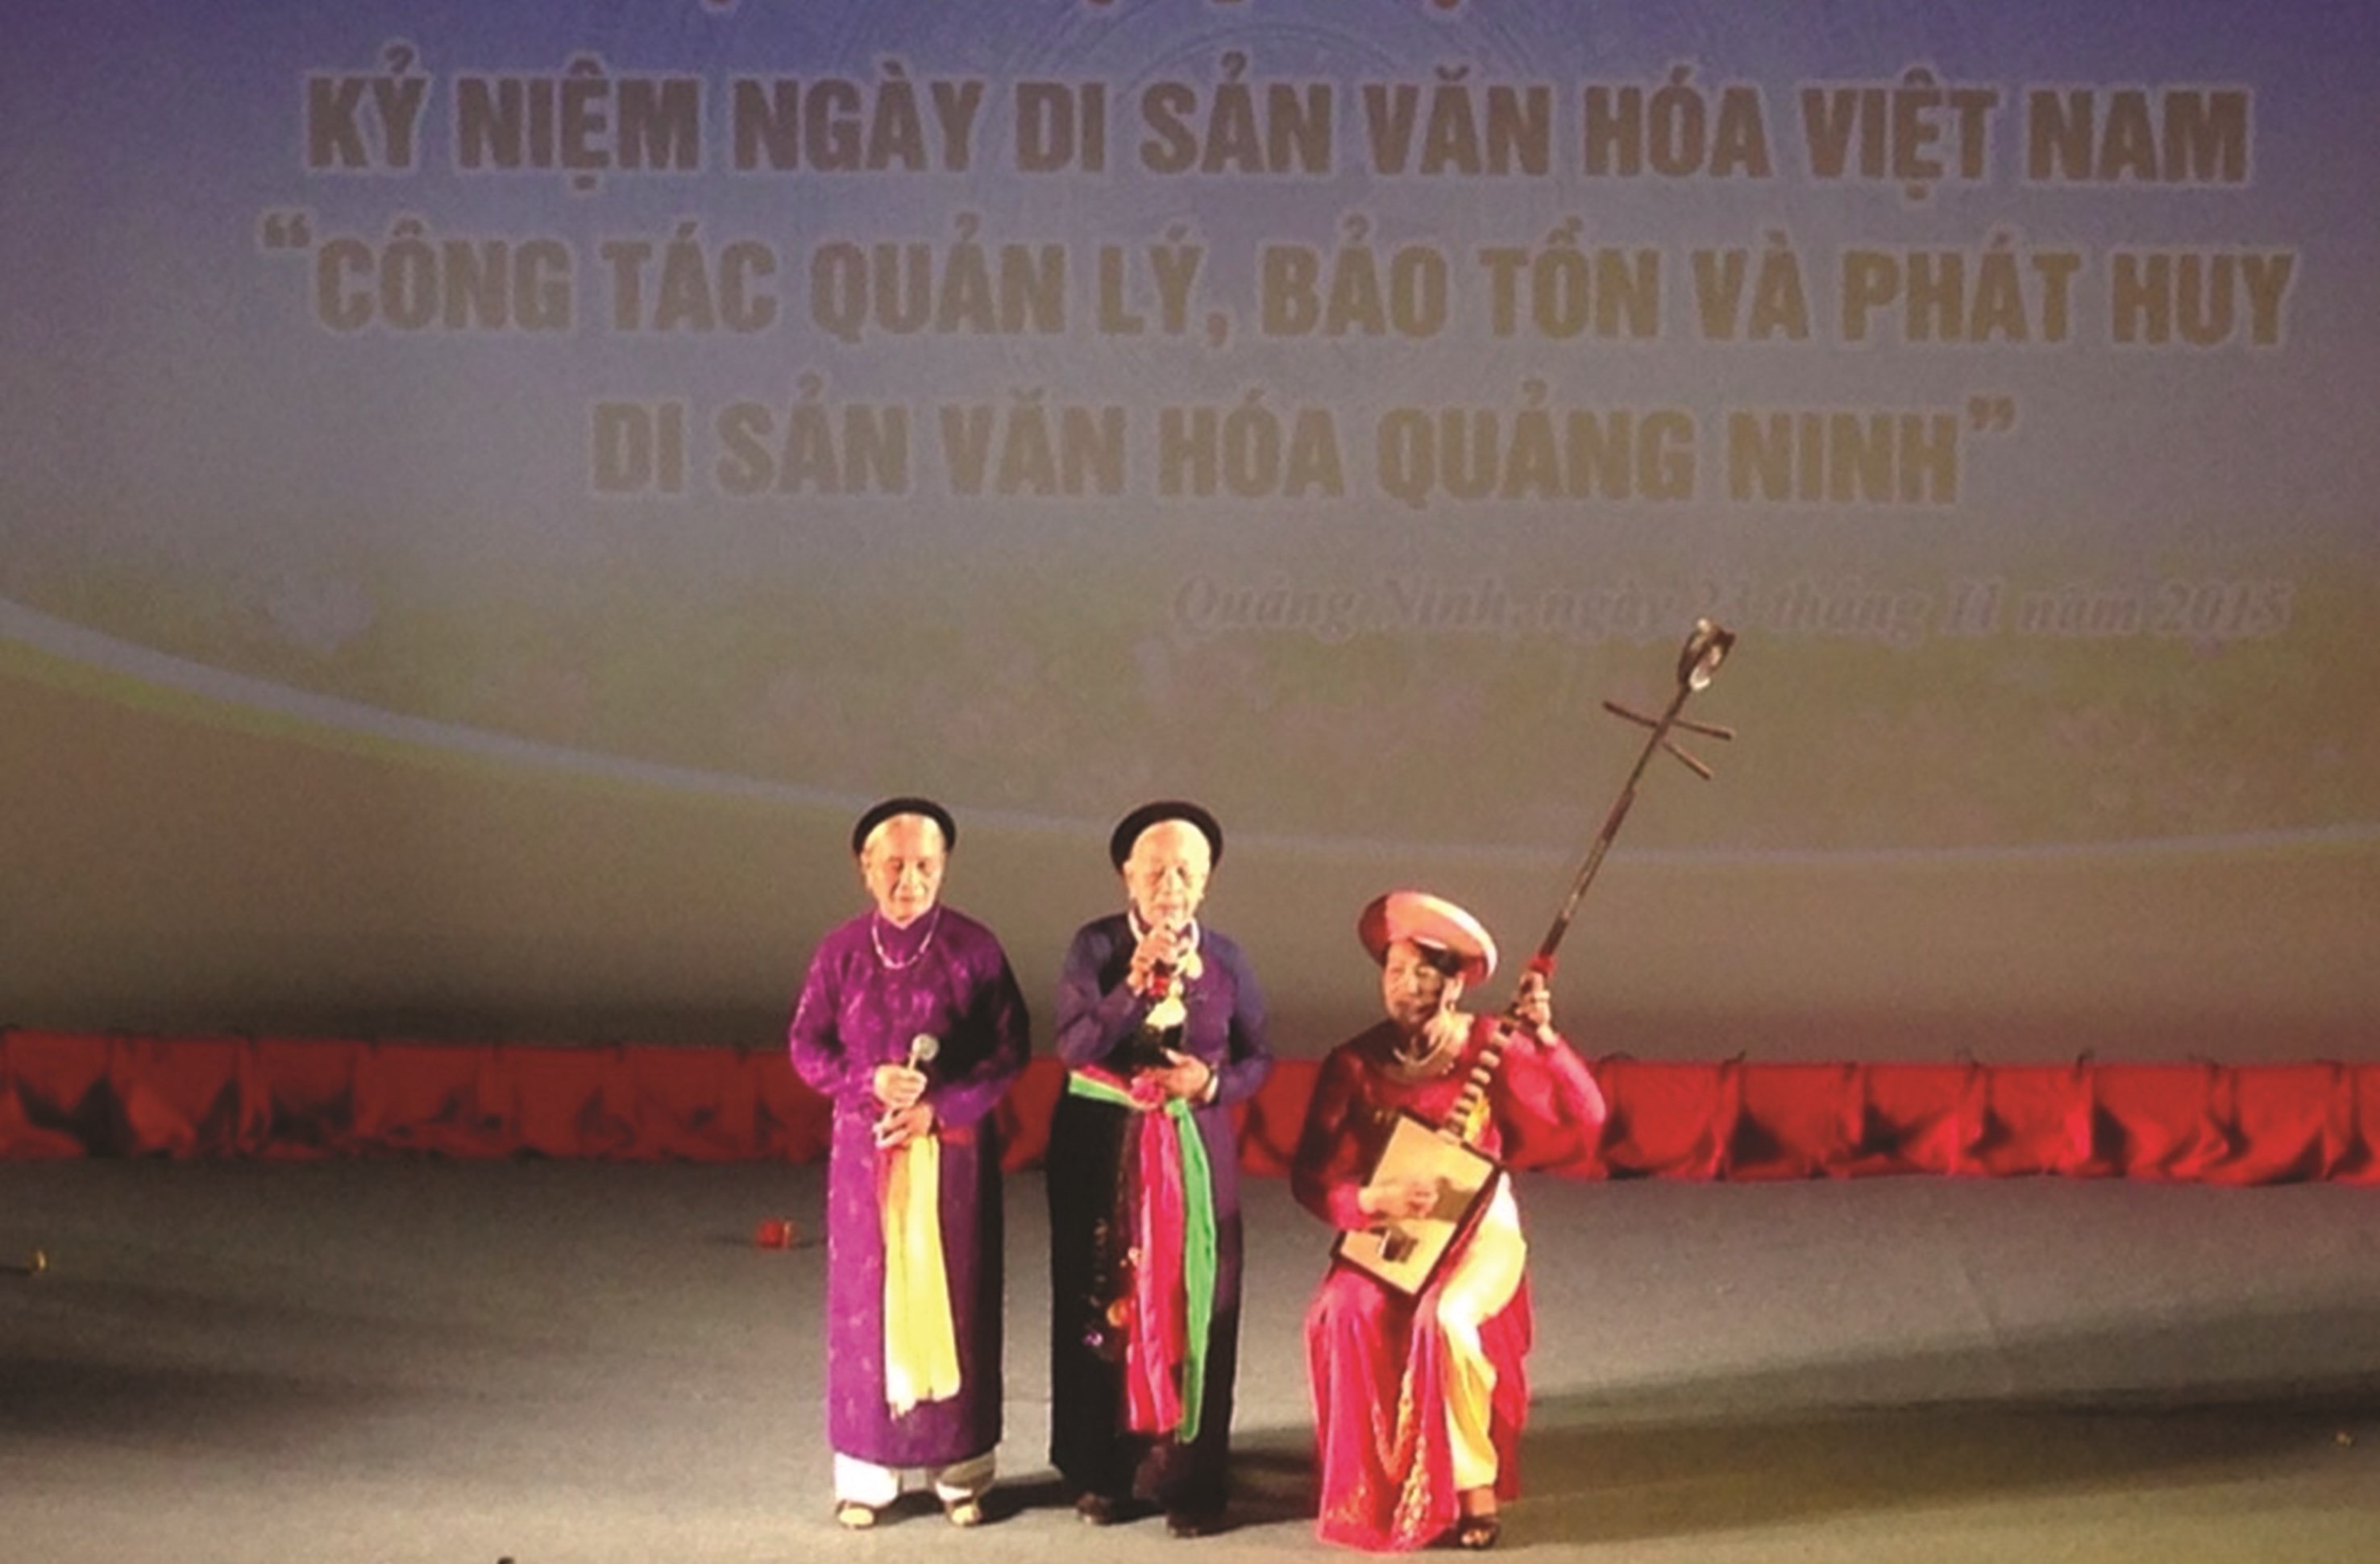 Nghệ nhân Lê Thị Lộc đang đánh đàn trong một tiết mục hát nhà tơ - hát, múa cửa đình